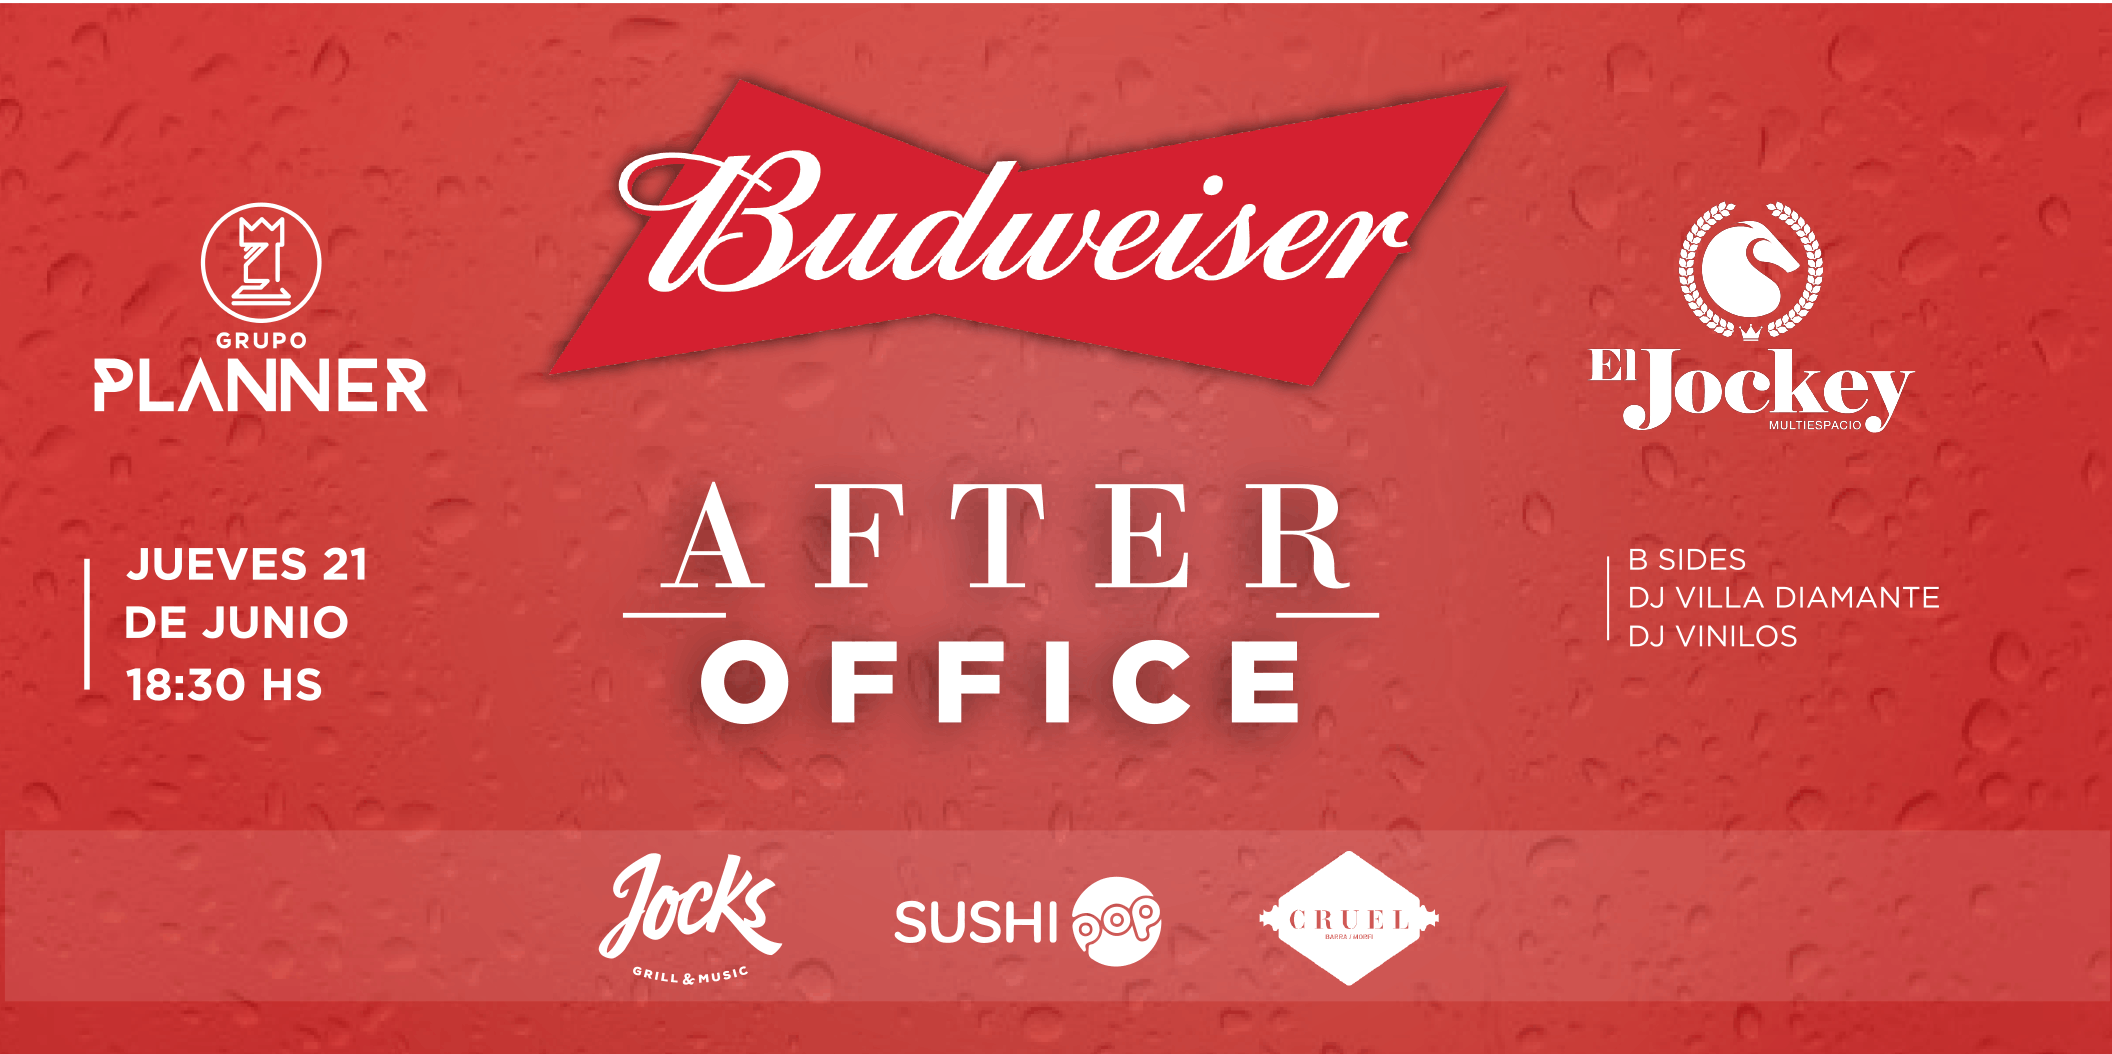 Budweiser After Office